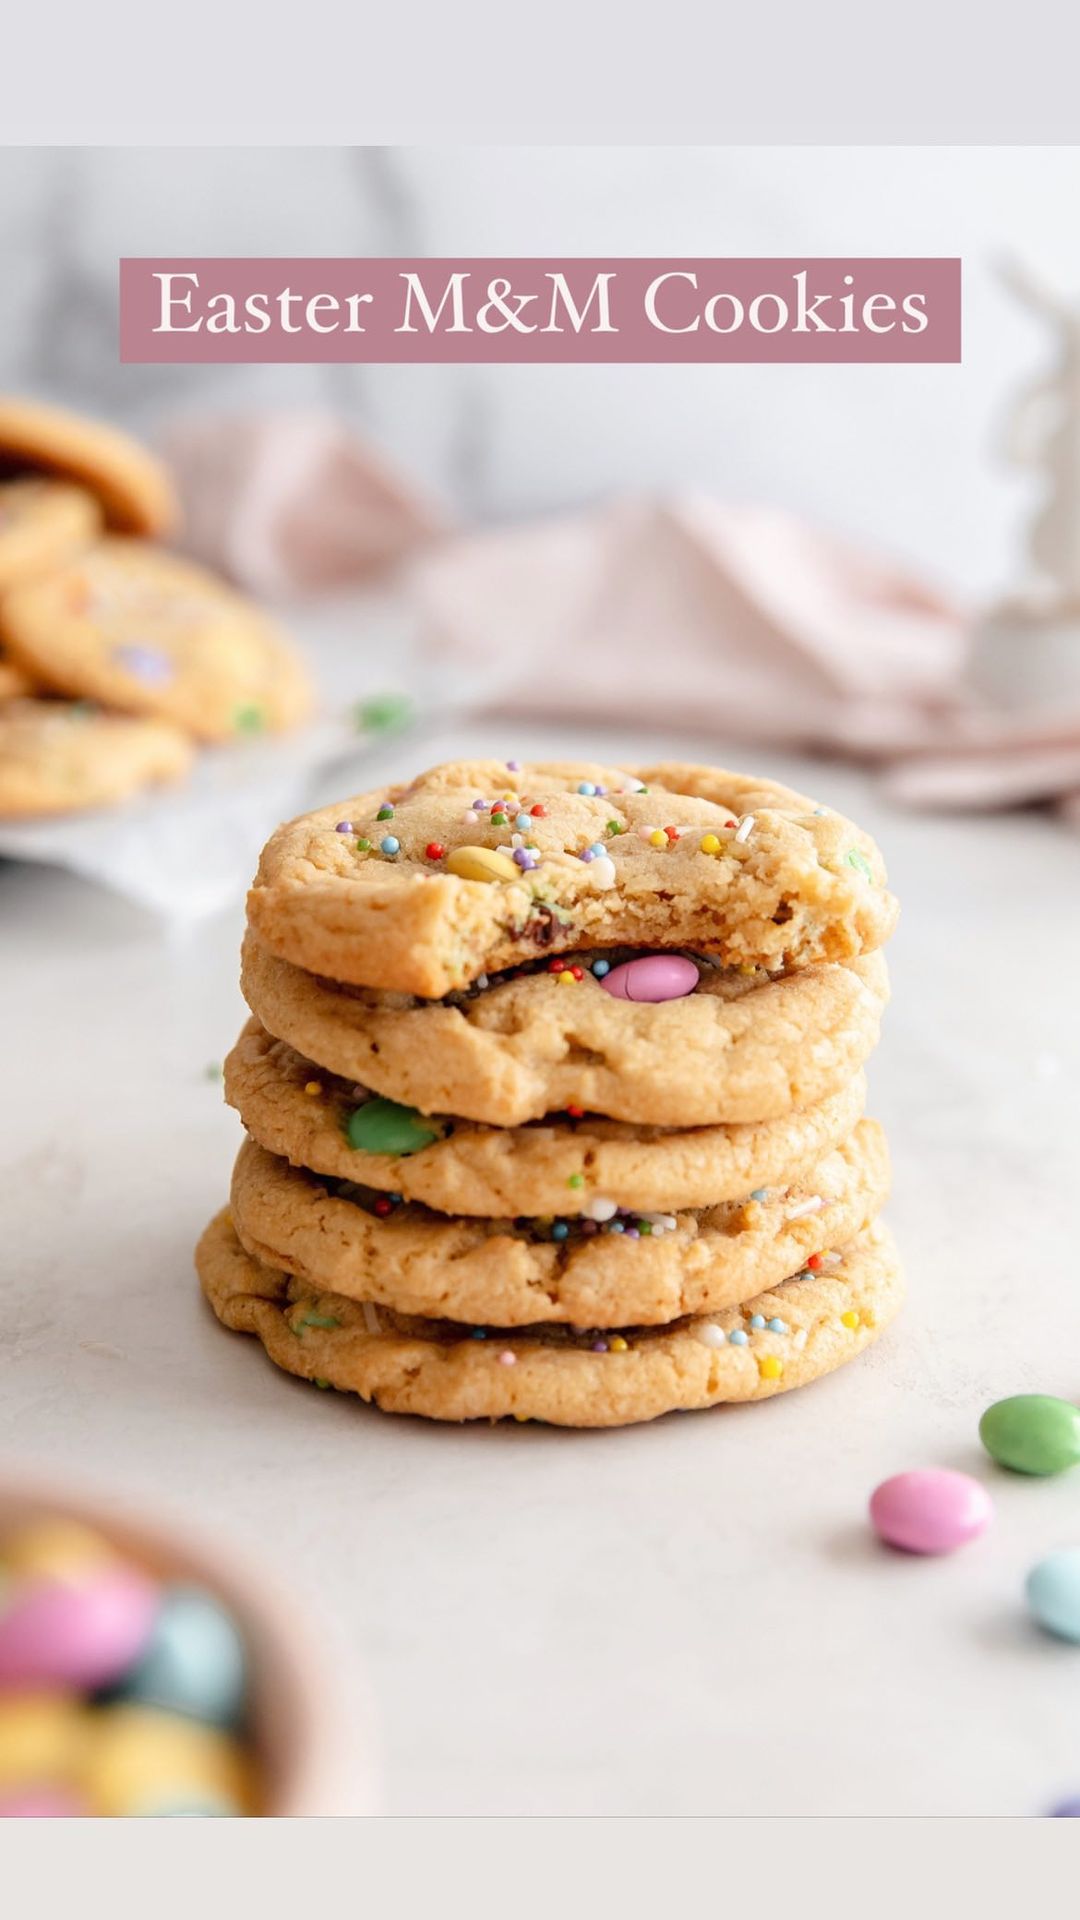 Easter M&M’s Cookies with Pastel Sprinkles